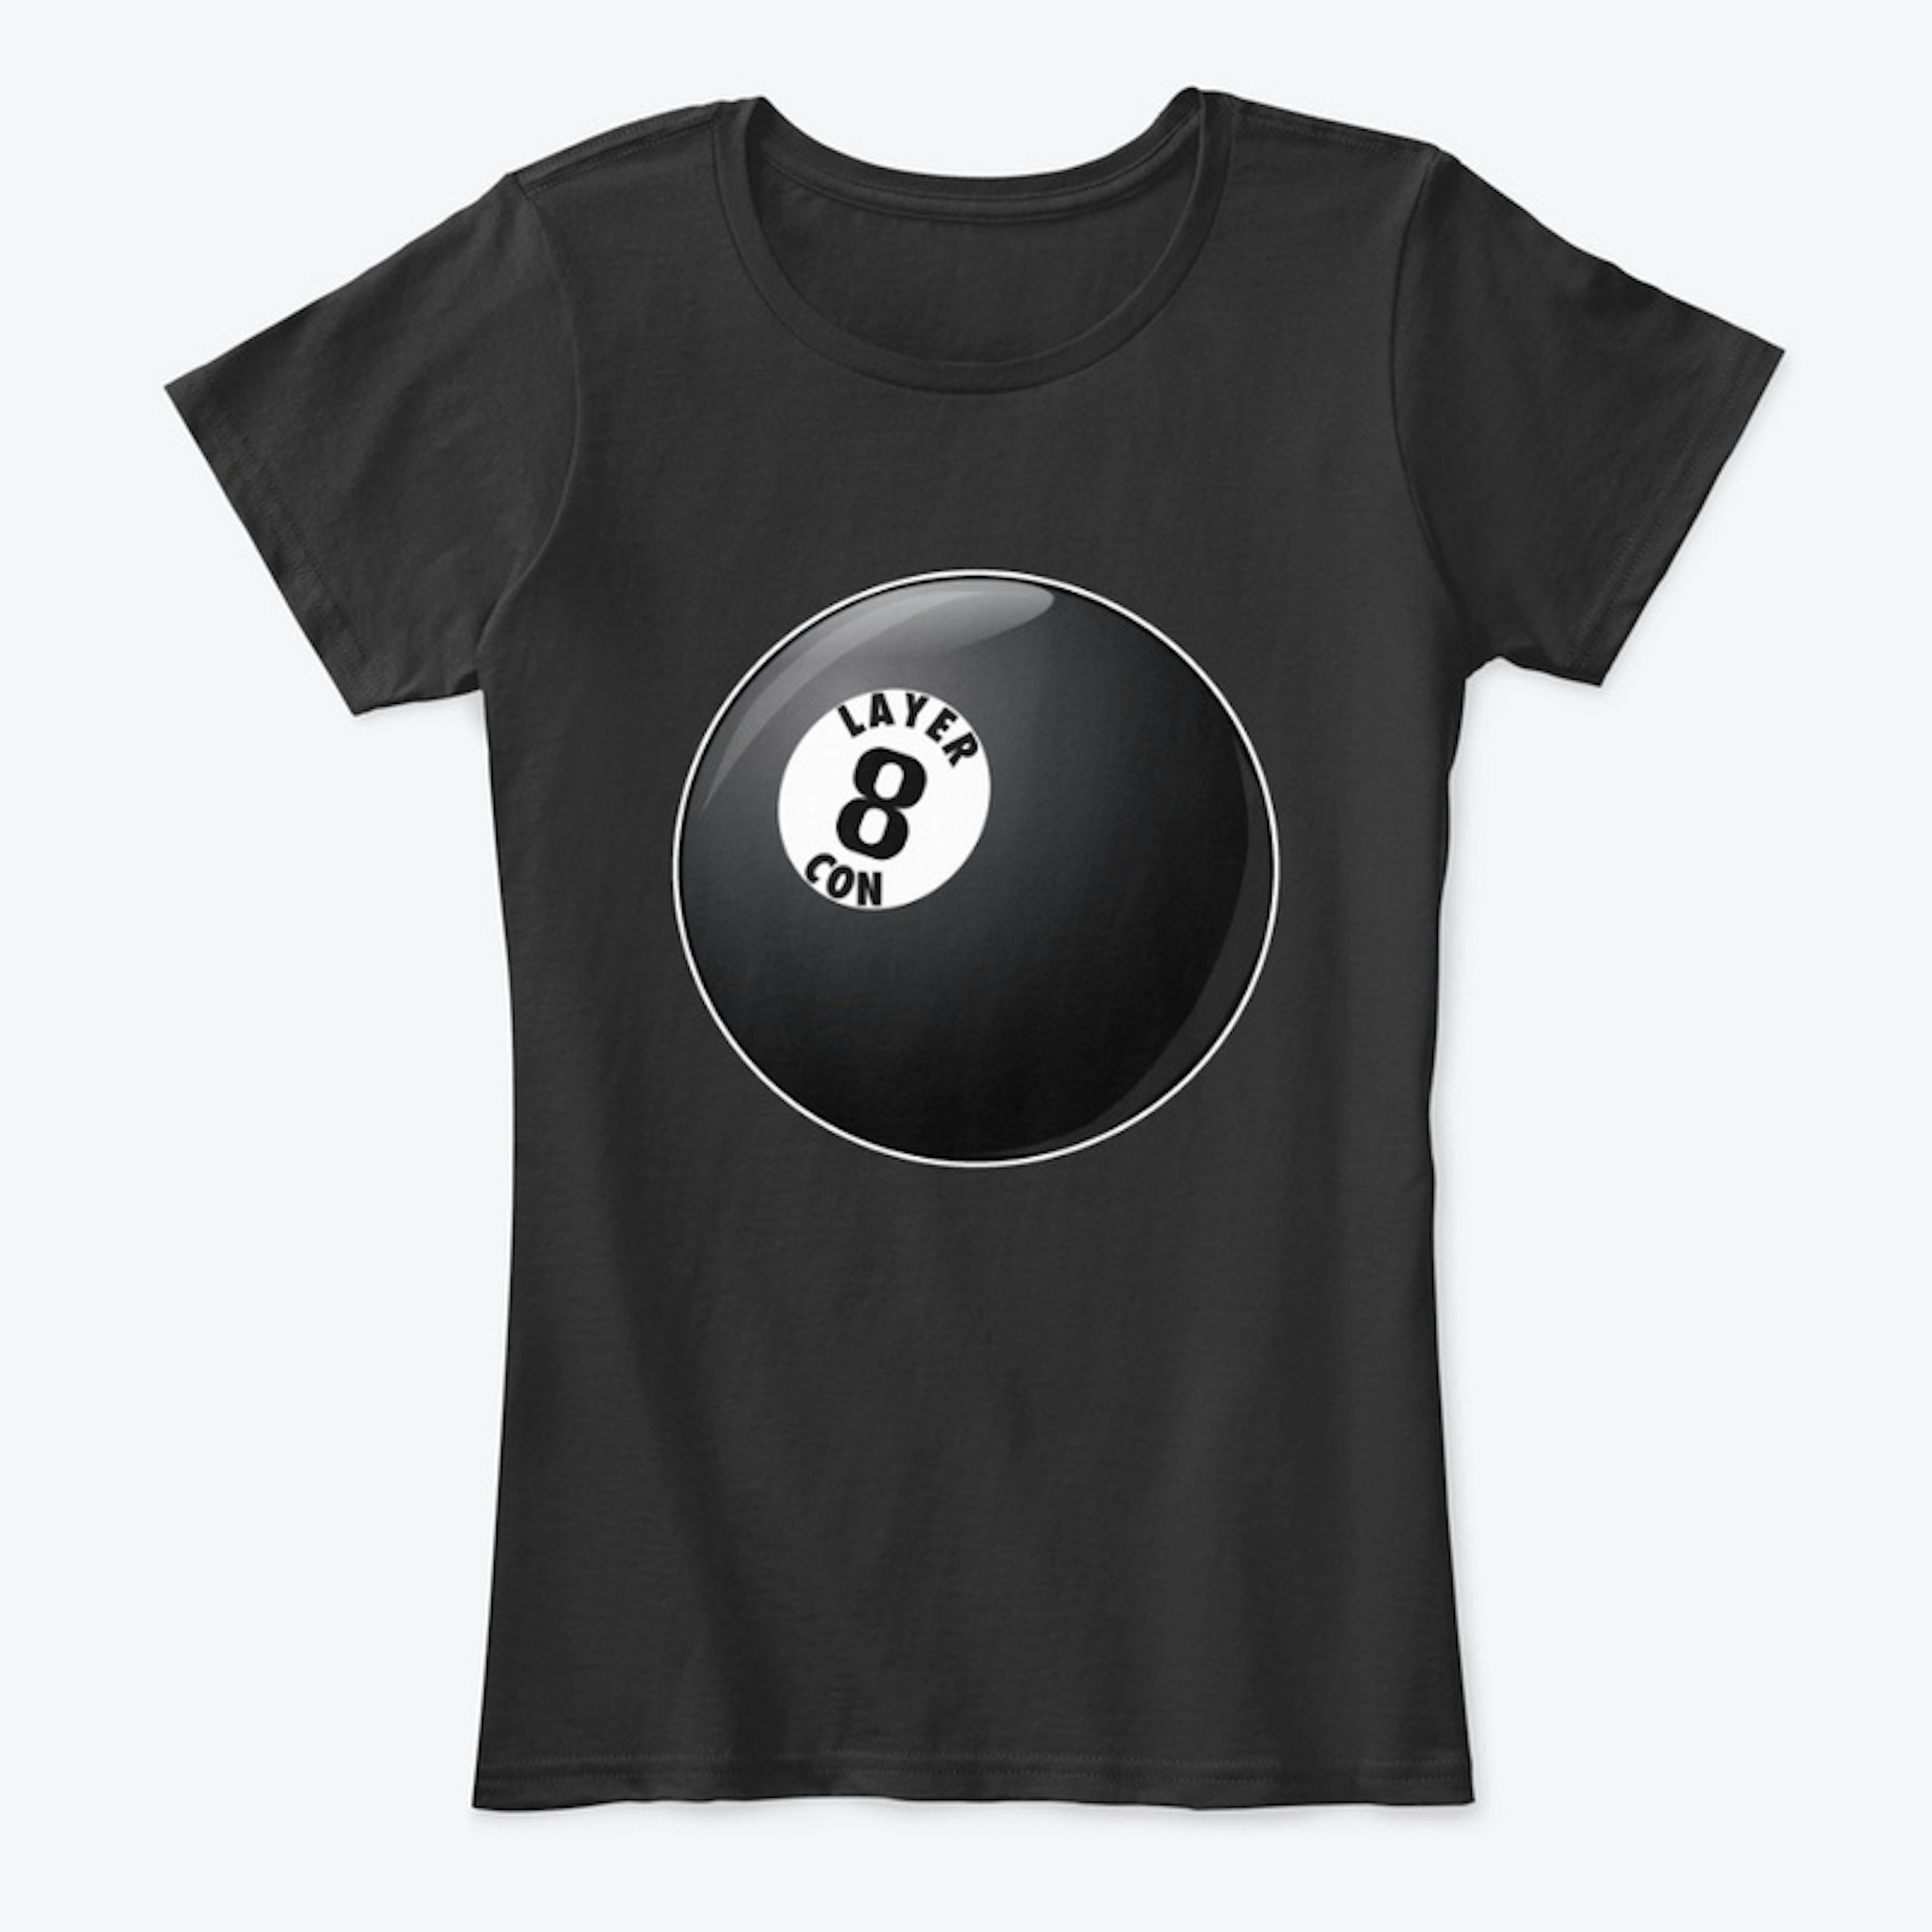 Women's Comfort T-Shirt - 8 Ball